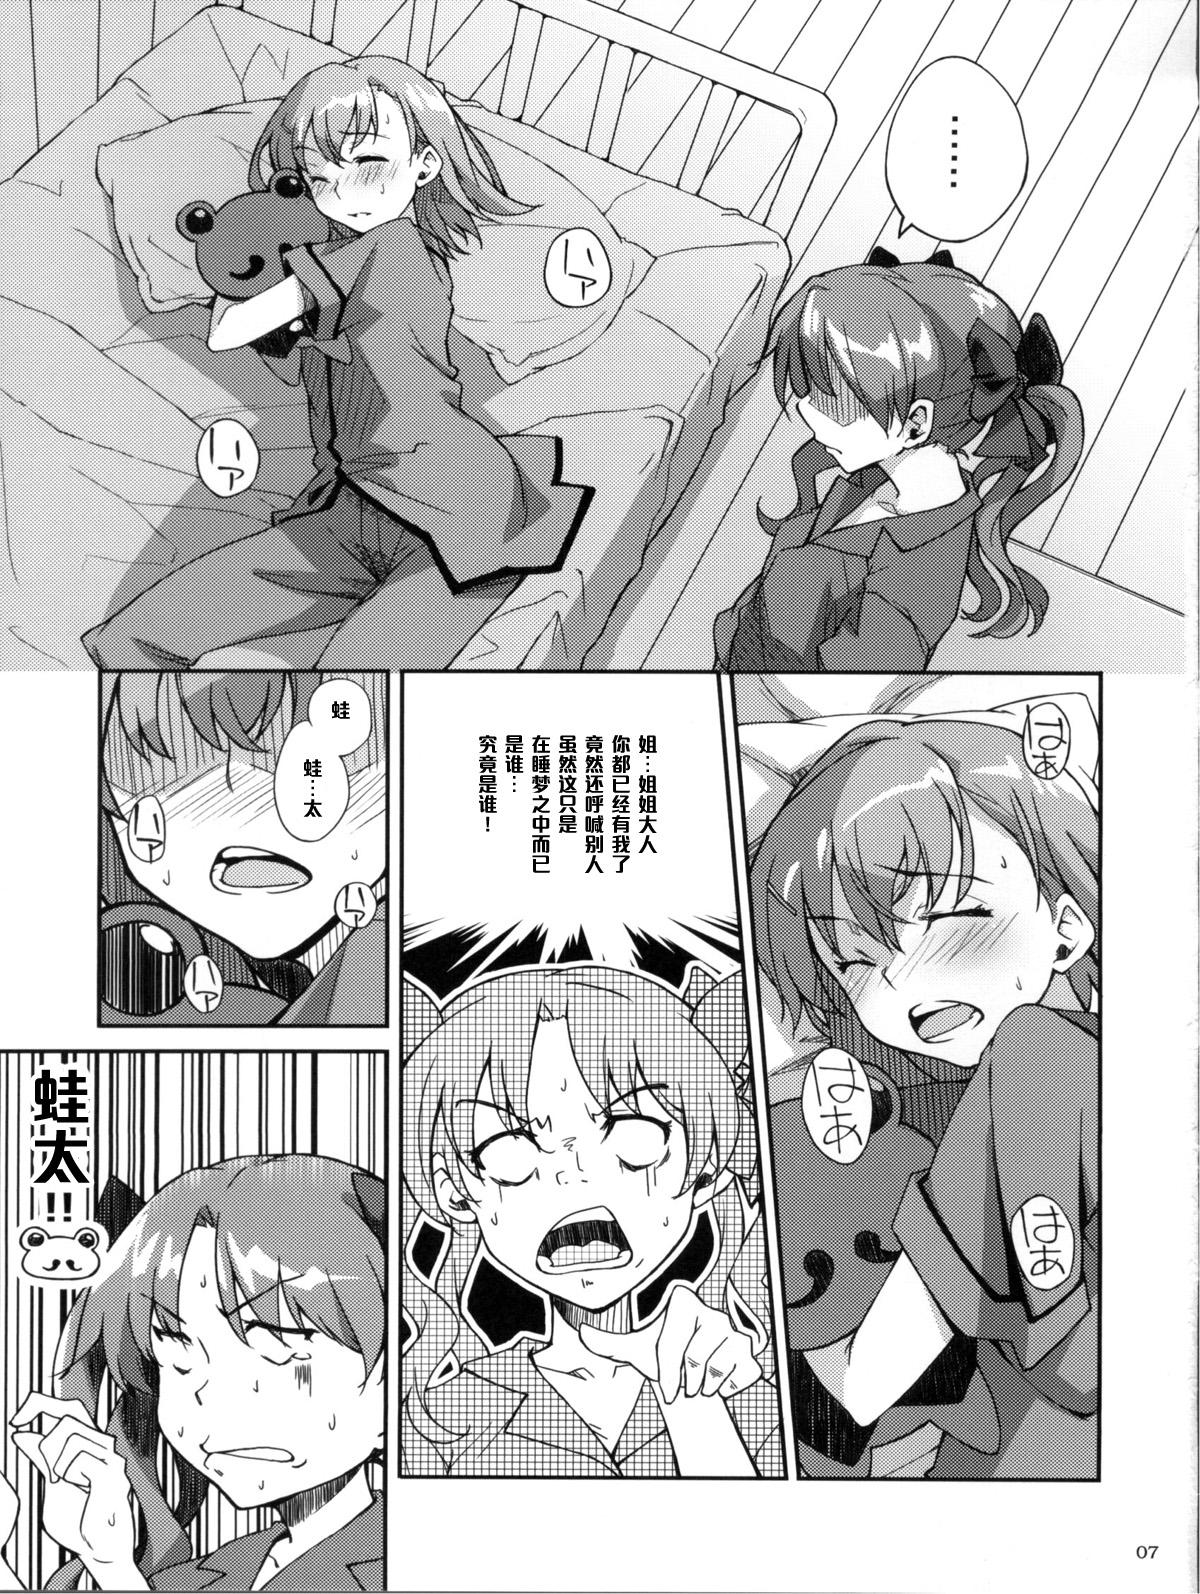 Pija Desu no!! 2 - Toaru kagaku no railgun Nurse - Page 7